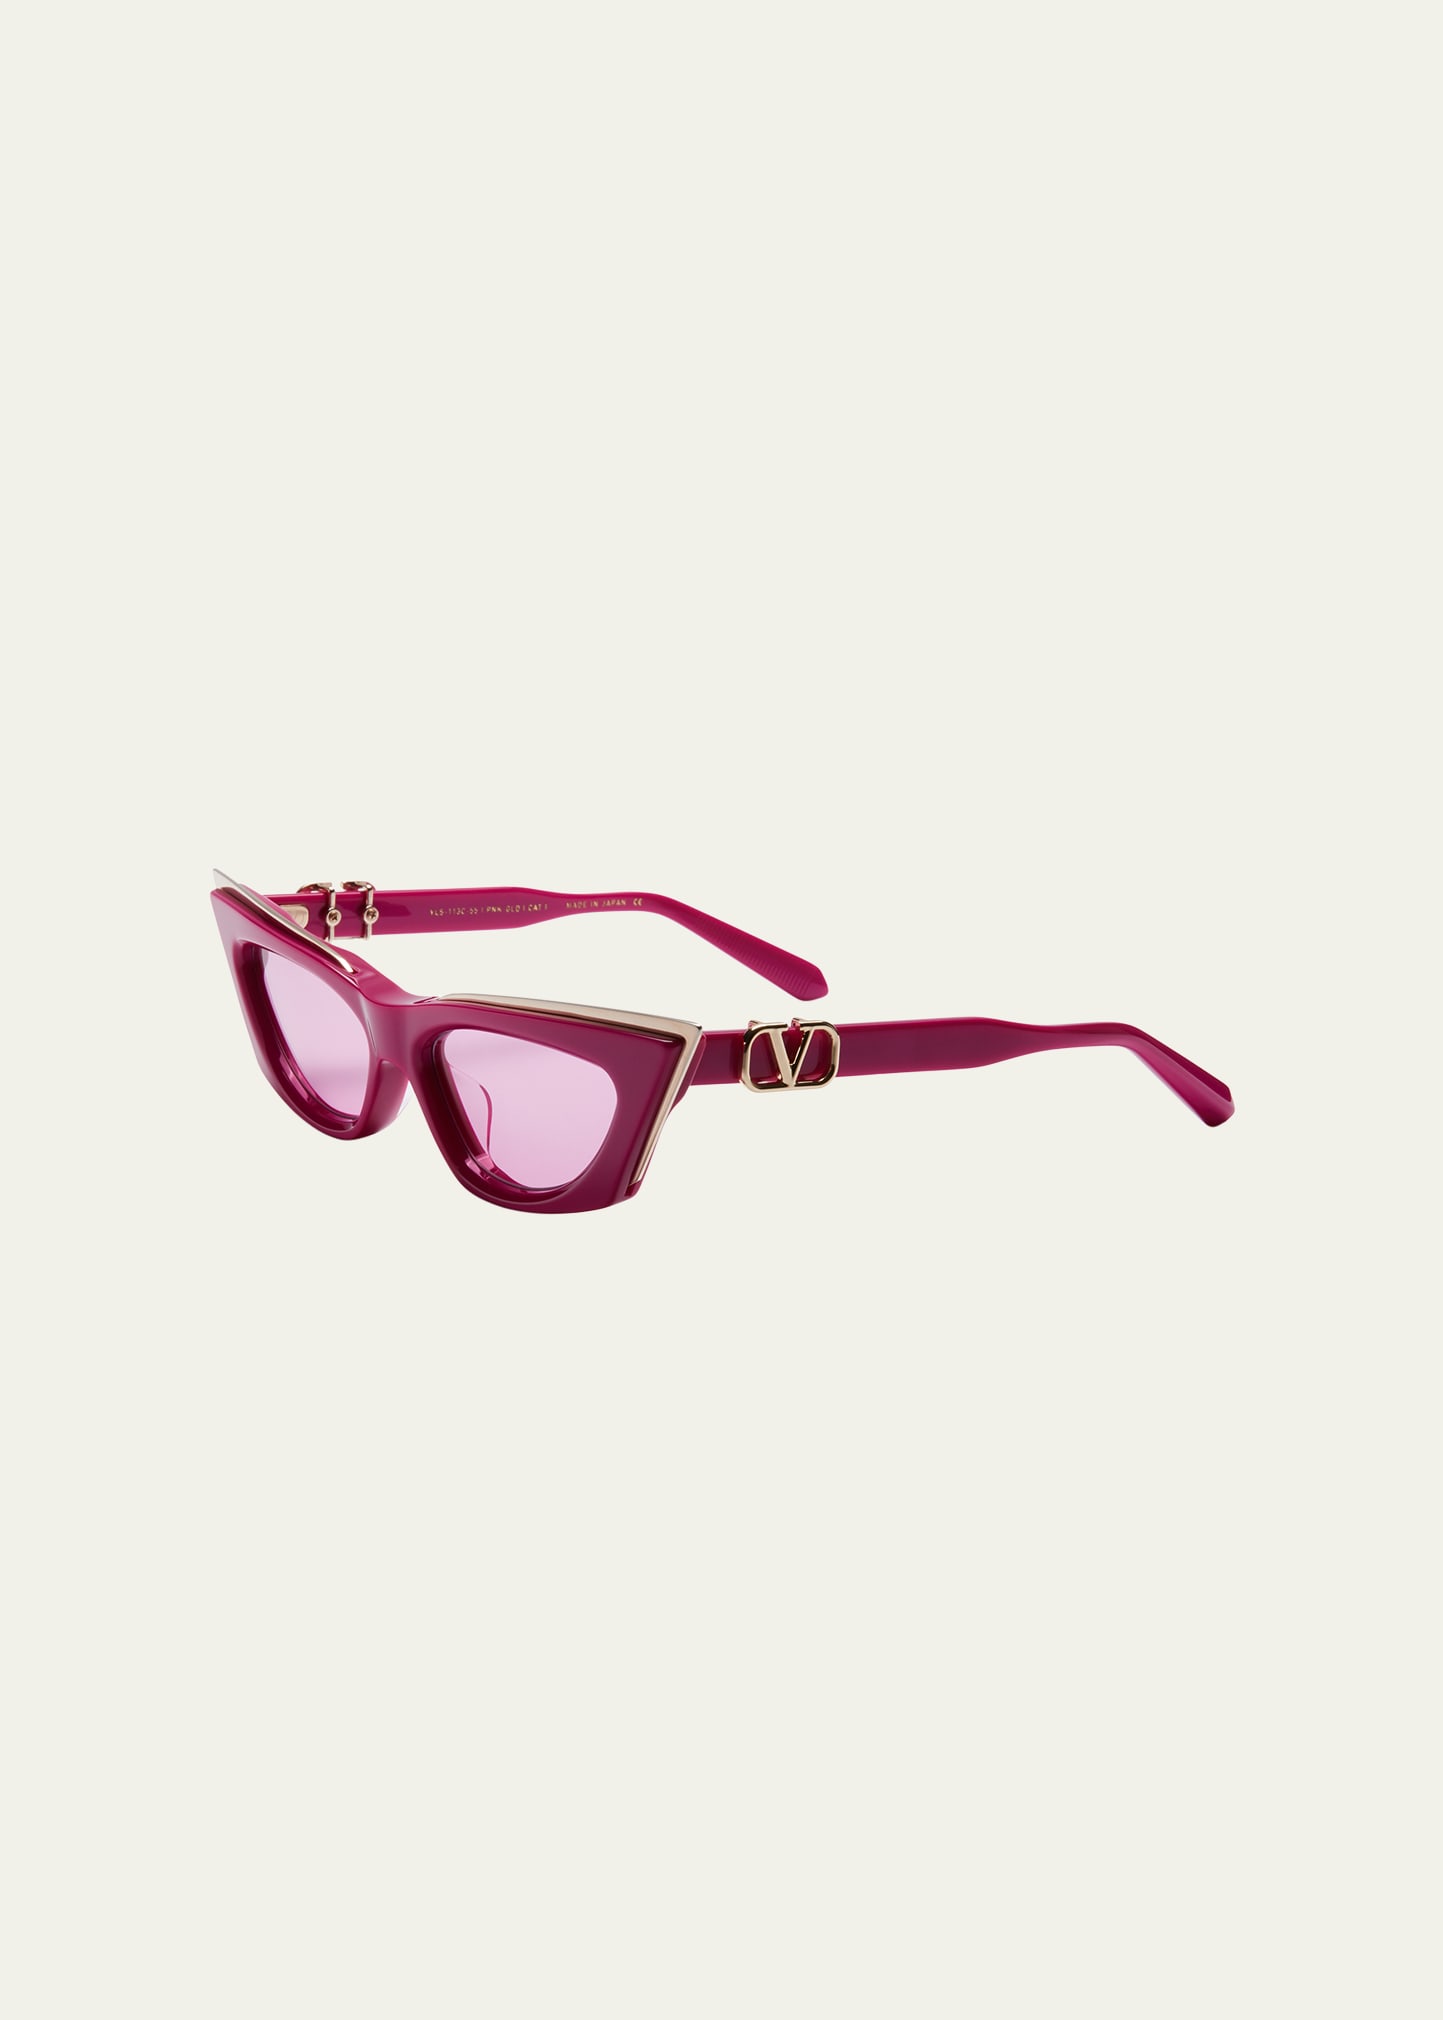 Valentino V-goldcut I Monochrome Acetate & Titanium Cat-eye Sunglasses In Pnk-gld